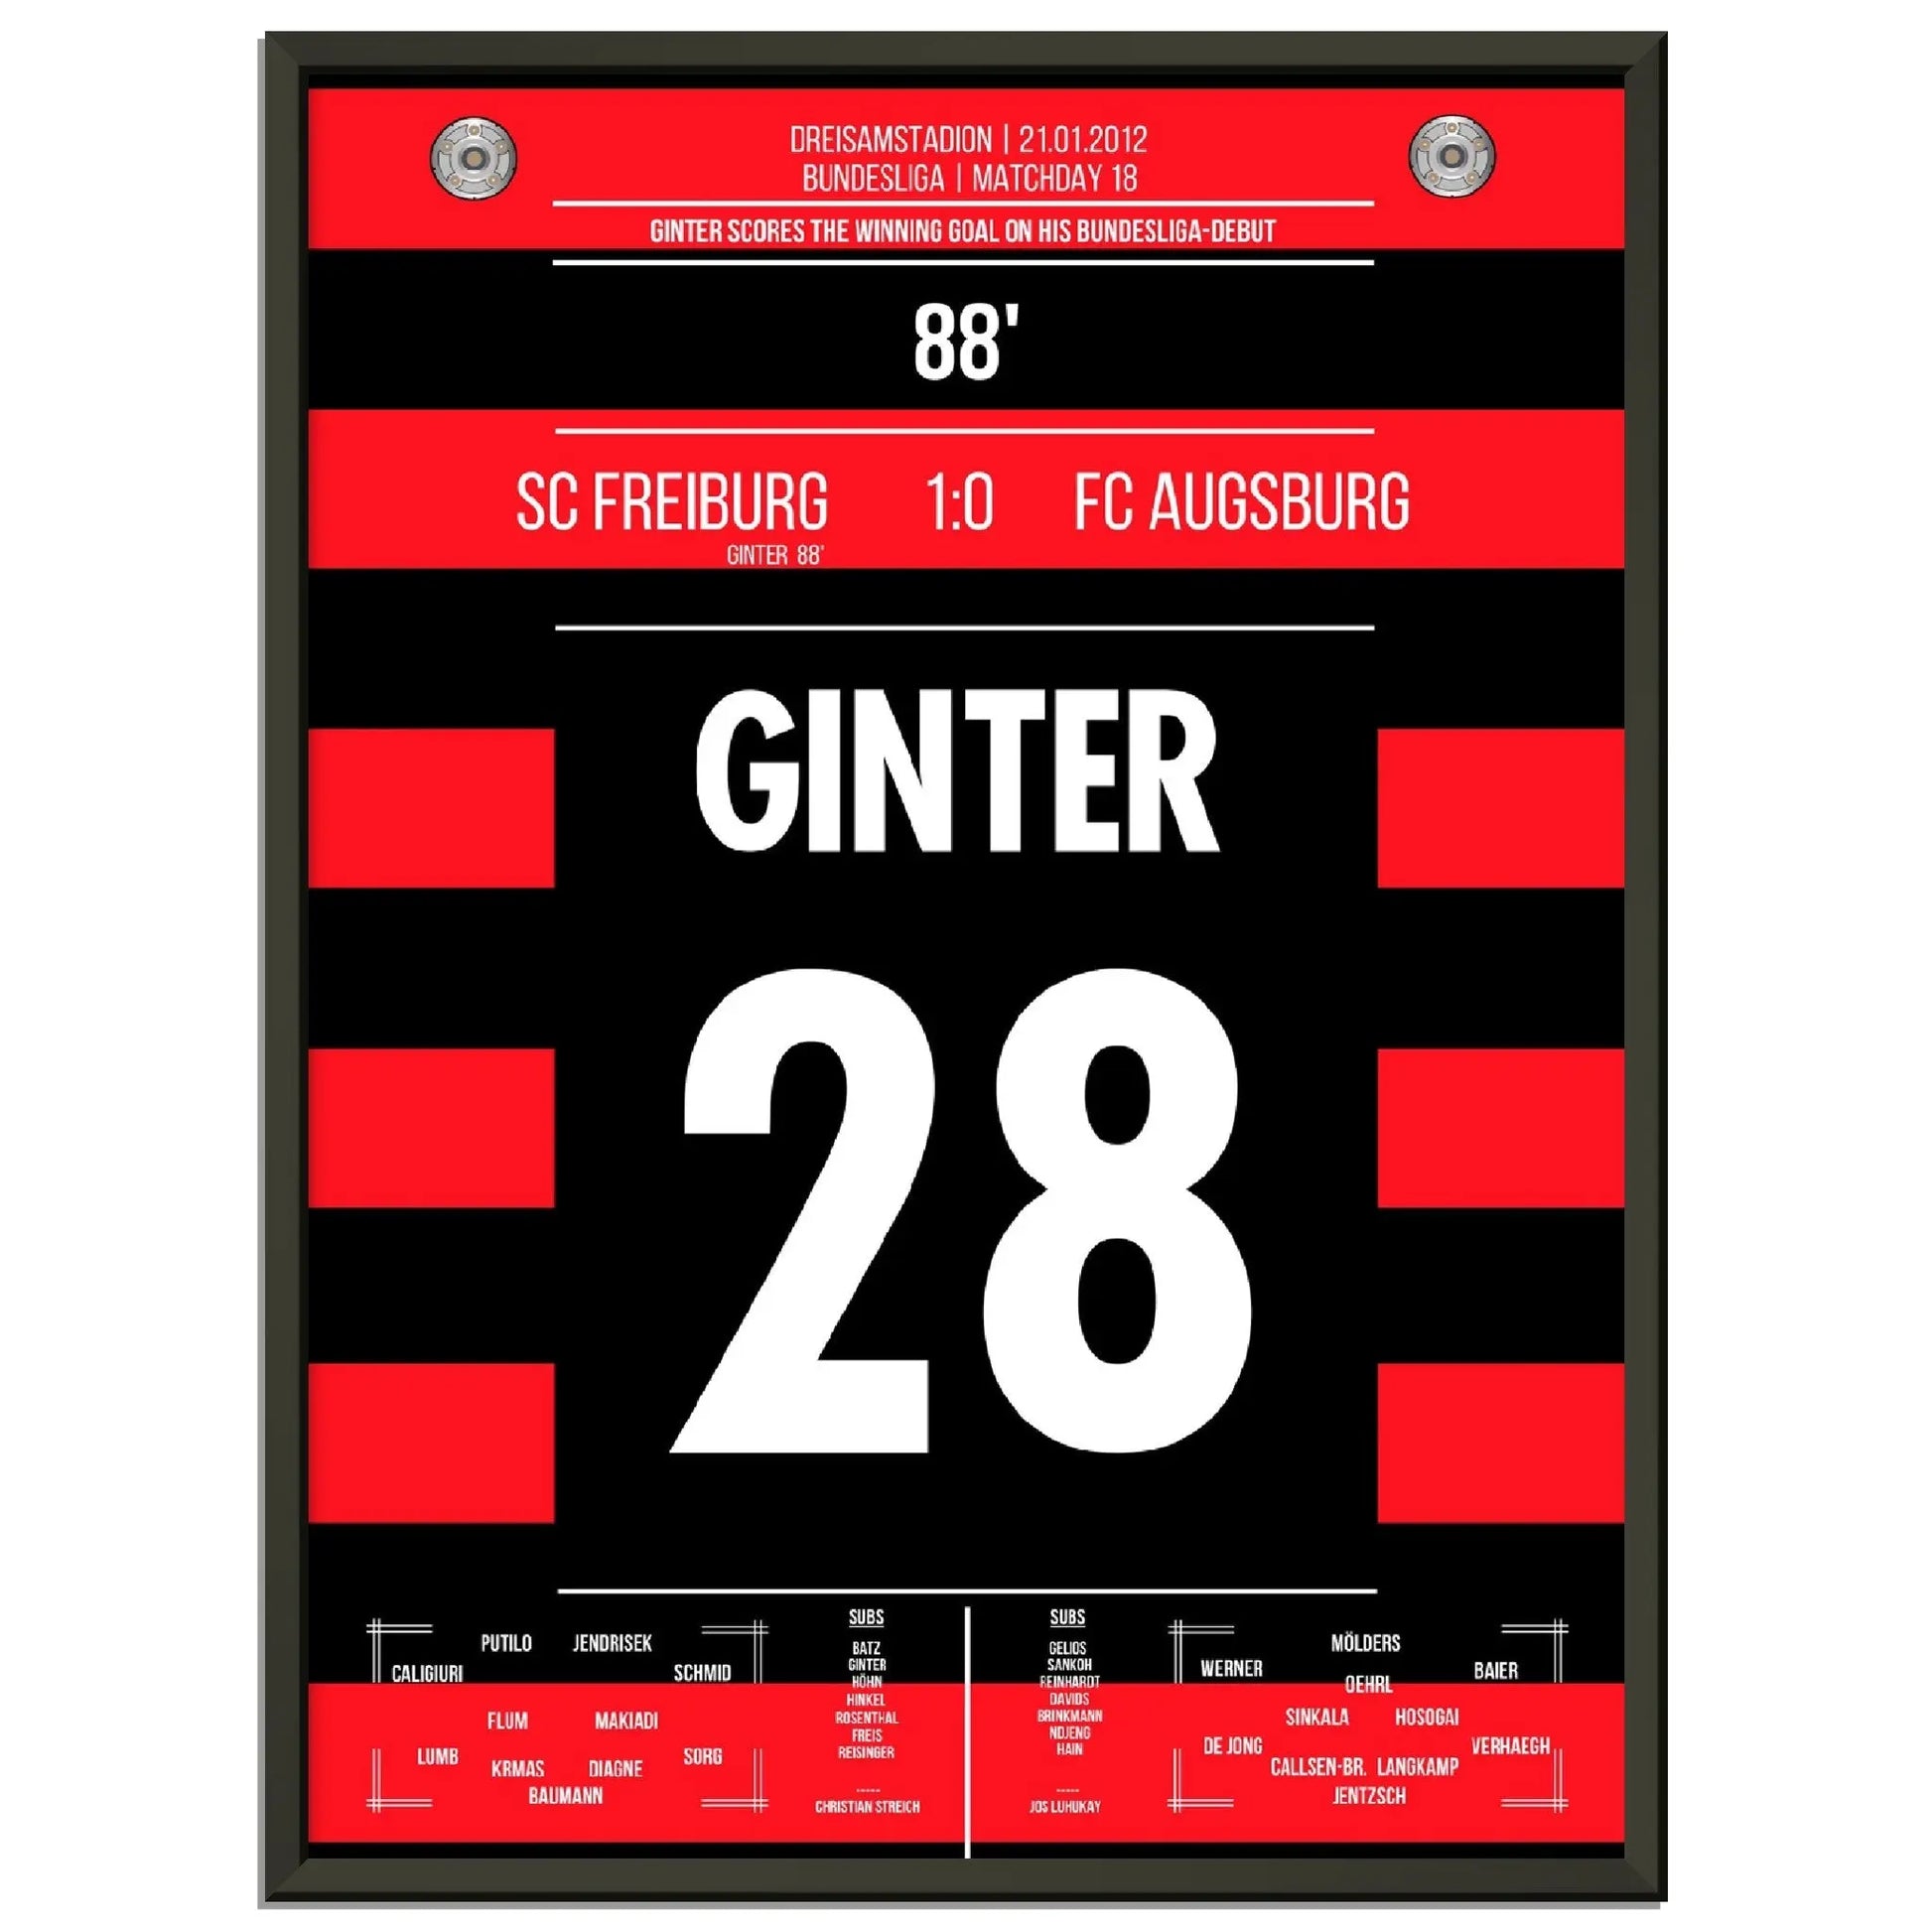 Ginter's Siegtreffer beim Bundesliga-Debüt 2012 